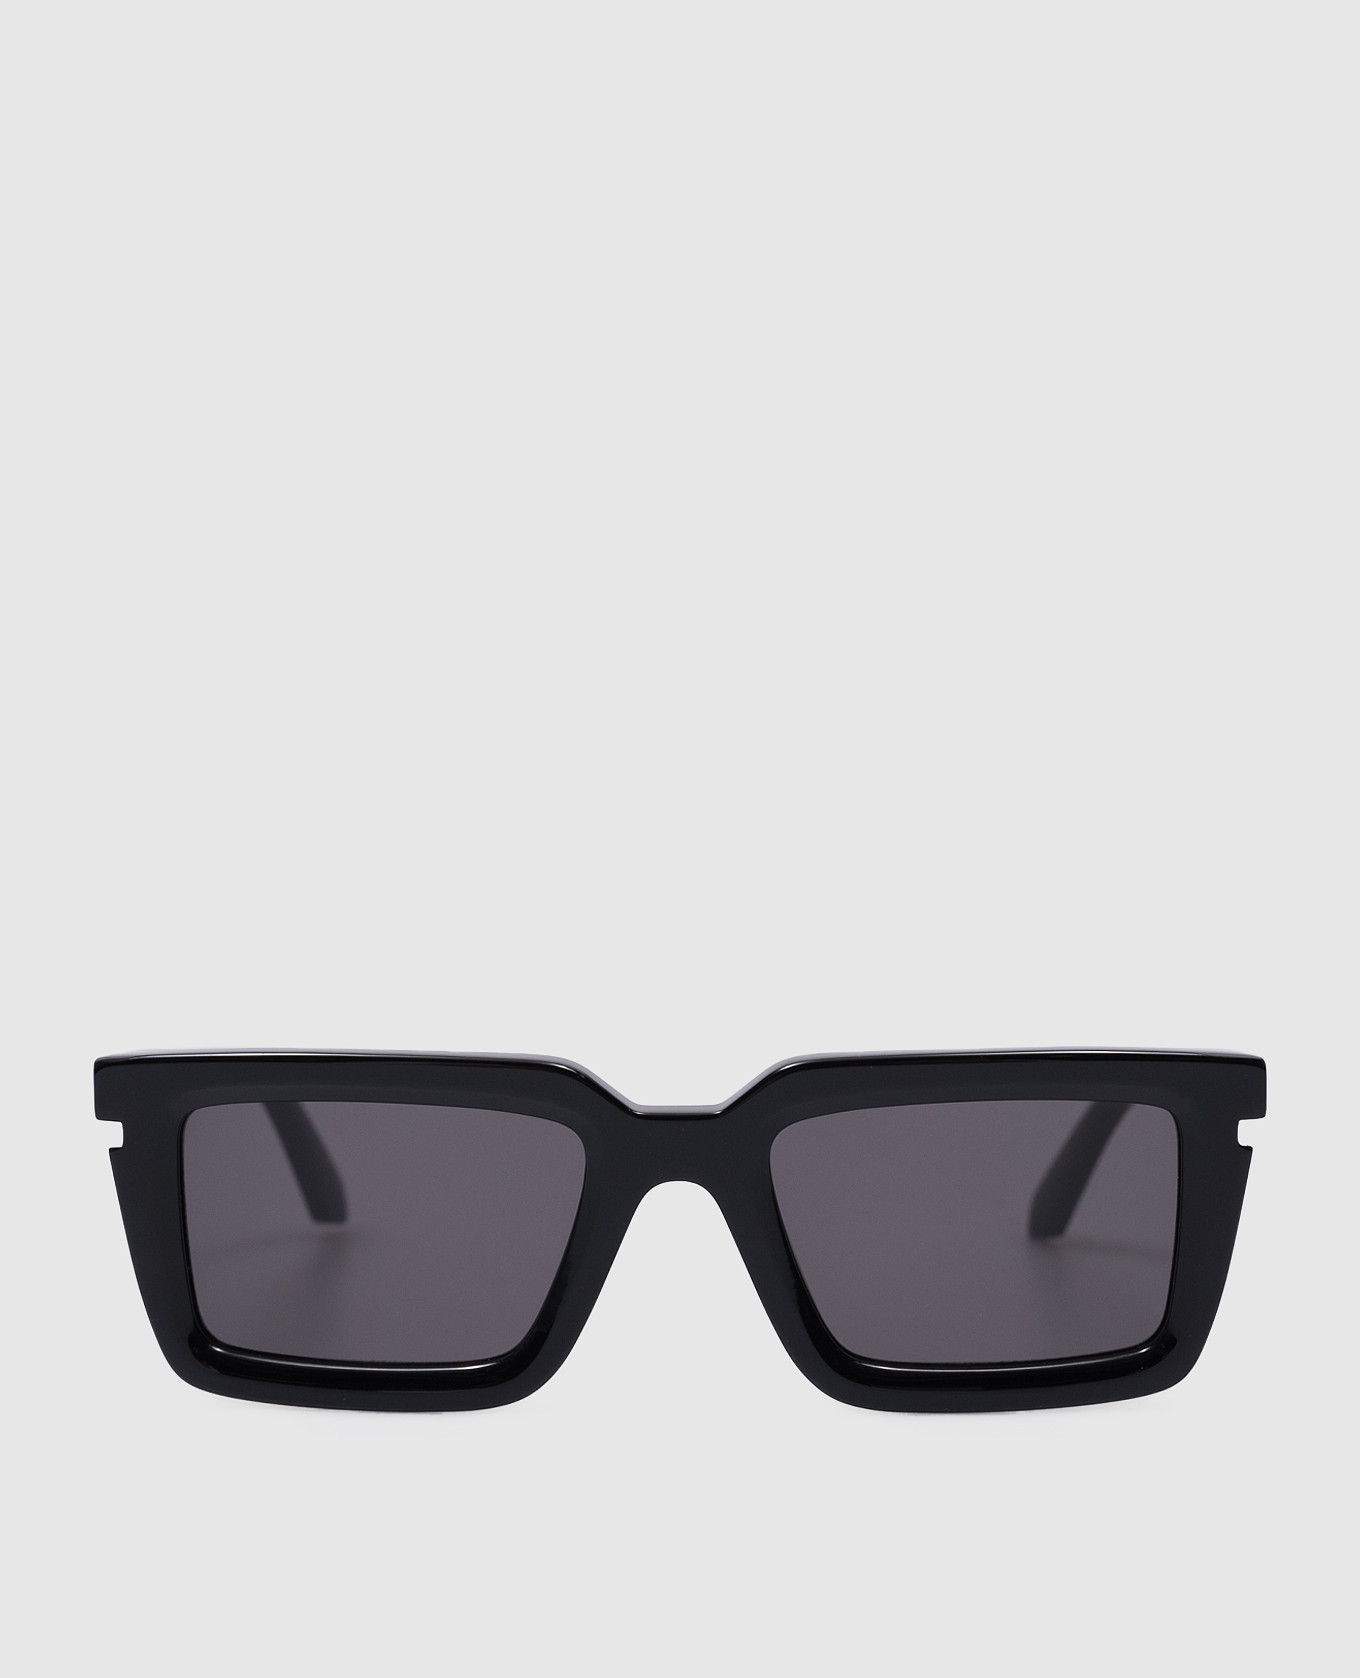 Tucson Black Sunglasses